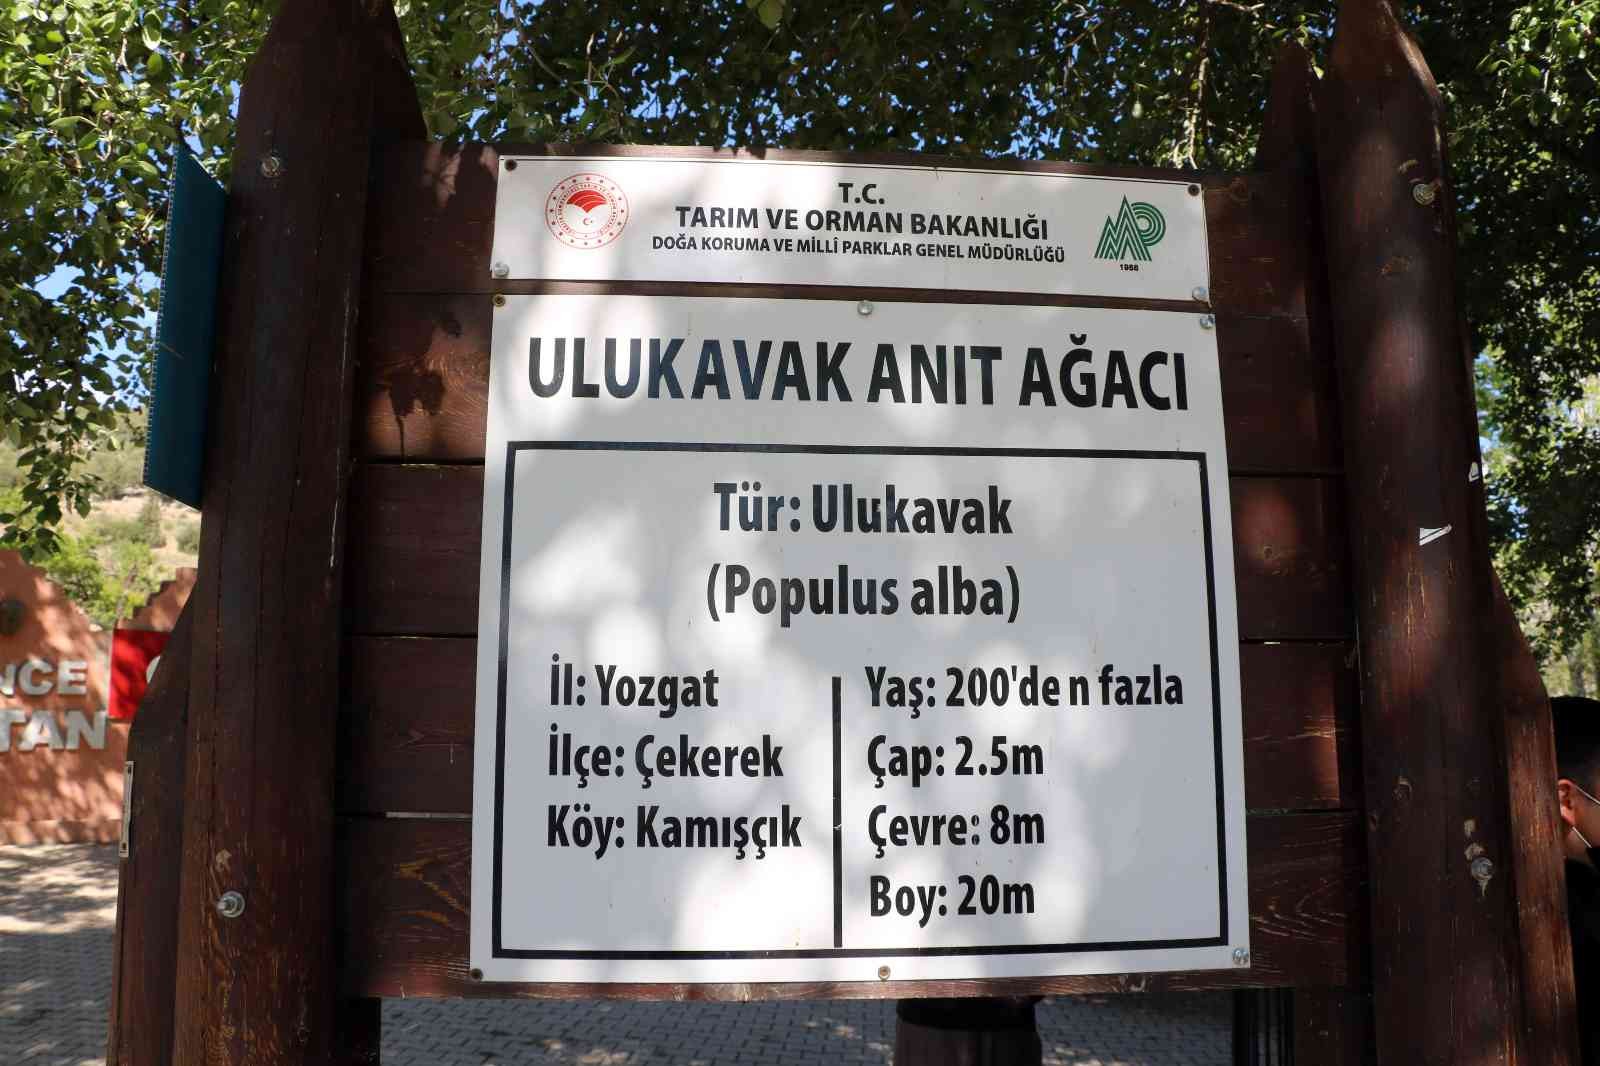 Yozgat’taki anıt ağaçlar zamana meydan okuyor #yozgat